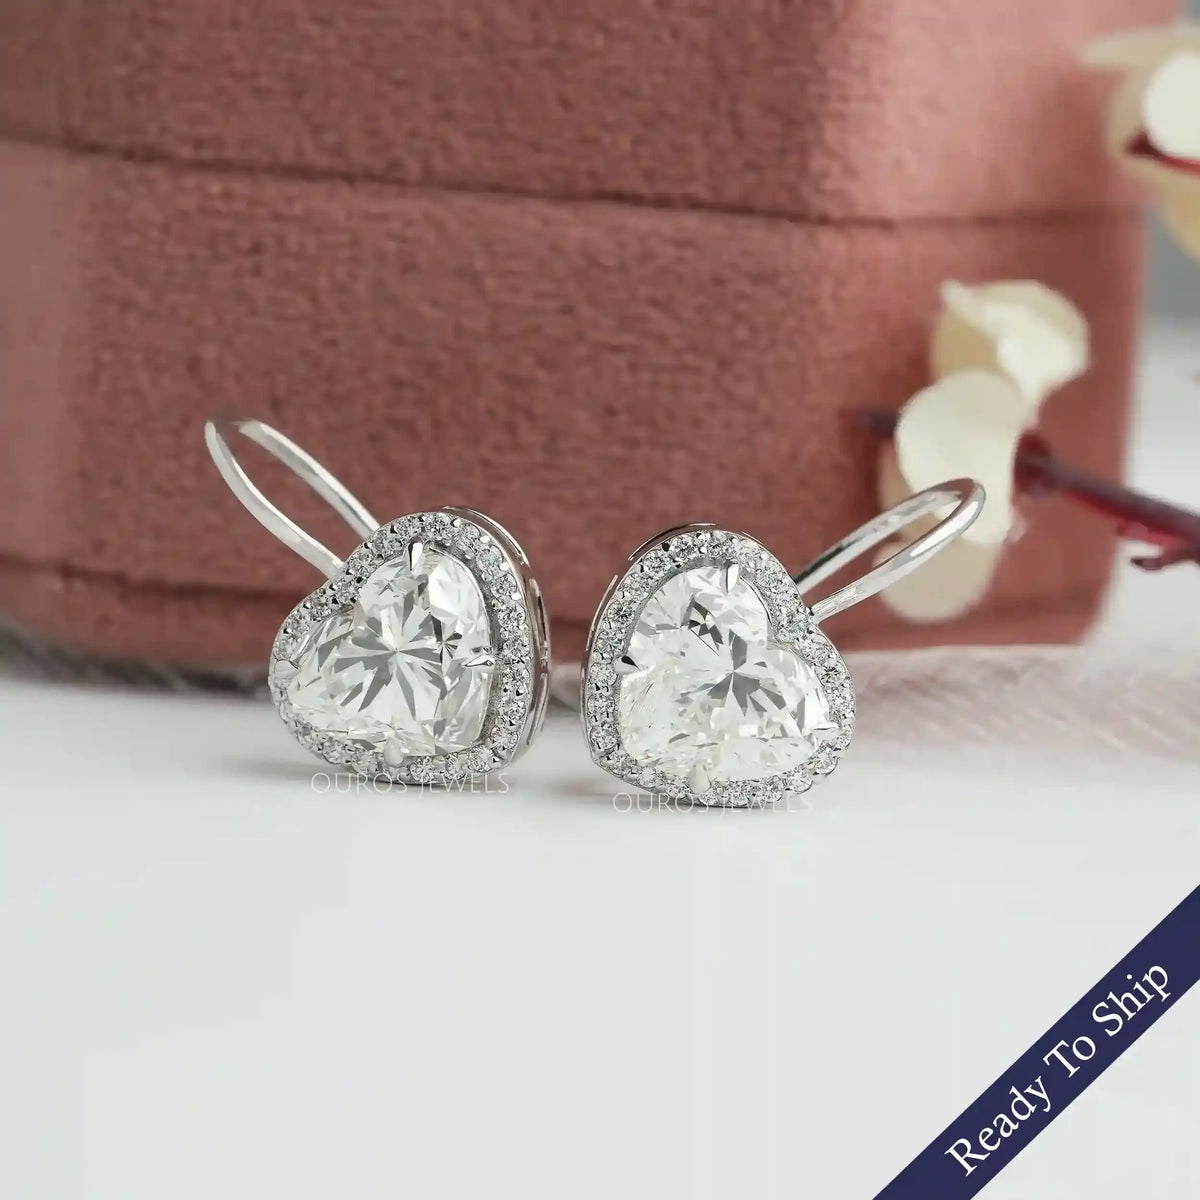 1/2 CT. T.W. Multi-Diamond Heart-Shaped Stud Earrings in 10K White Gold |  Zales